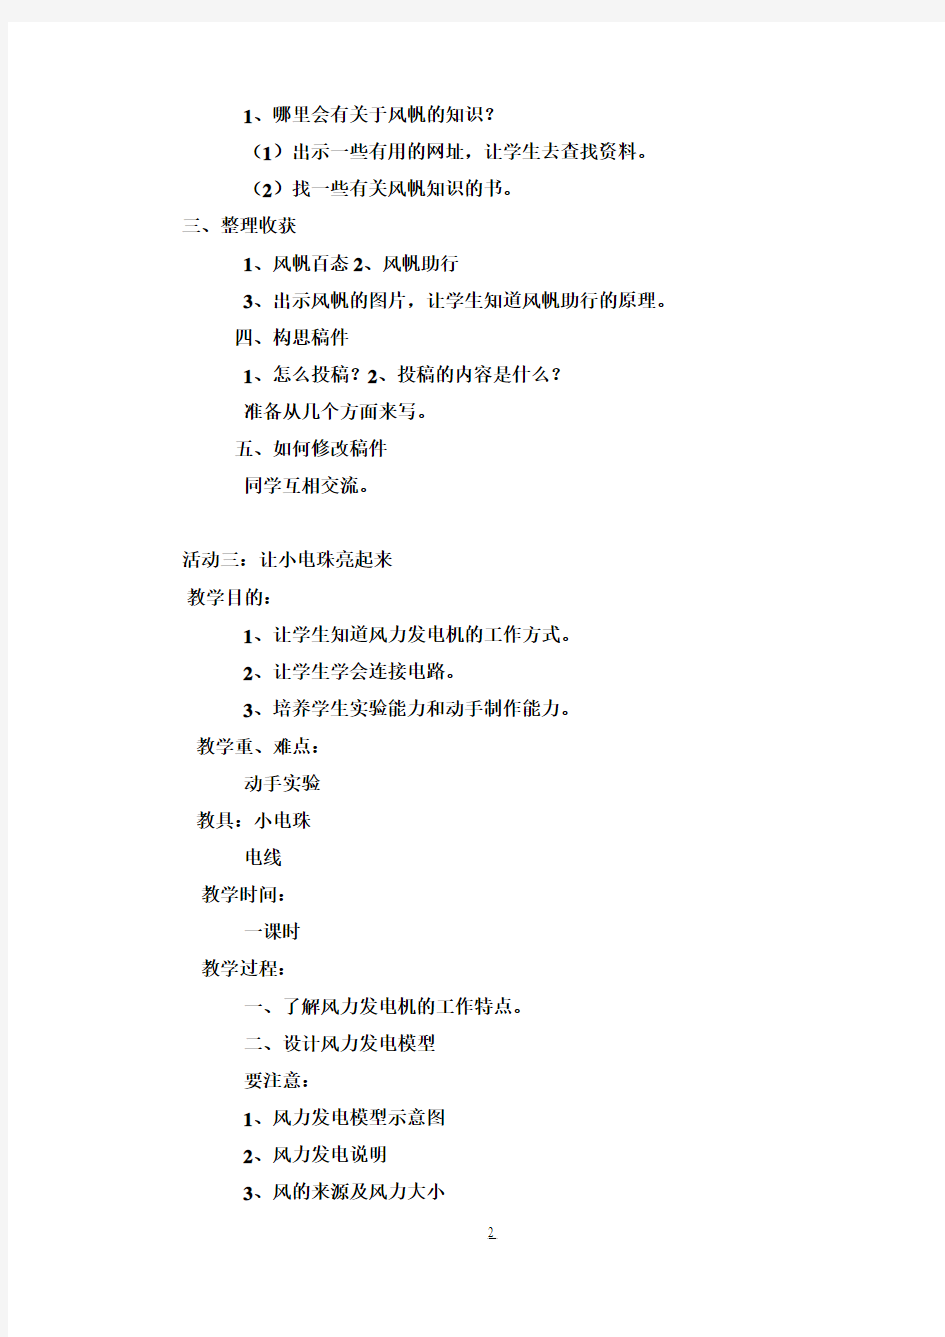 小学五年级下册综合实践活动教案(上海科技教育出版社)11